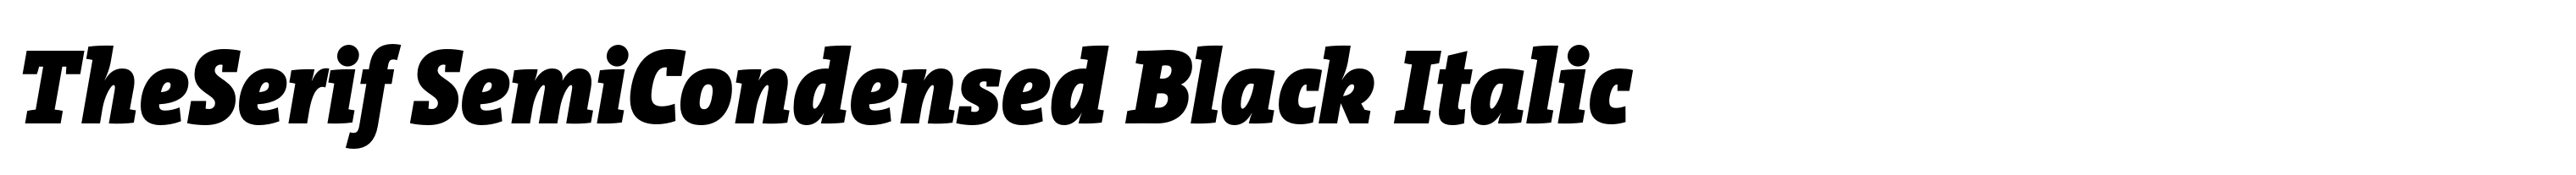 TheSerif SemiCondensed Black Italic